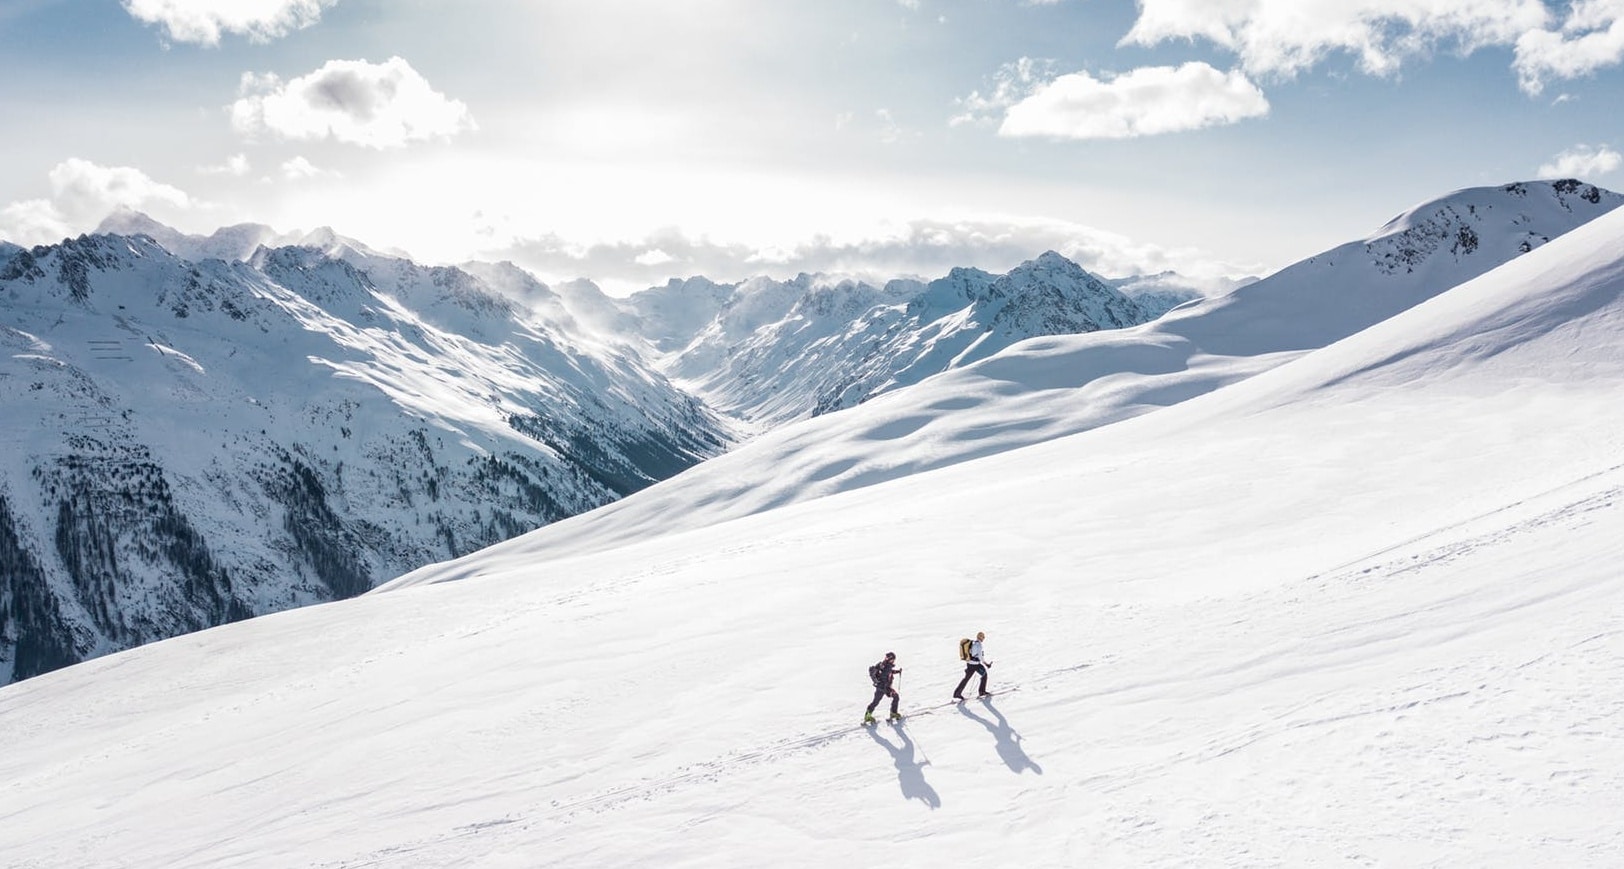 Schneeschuhwandern ein alternativer wintersport